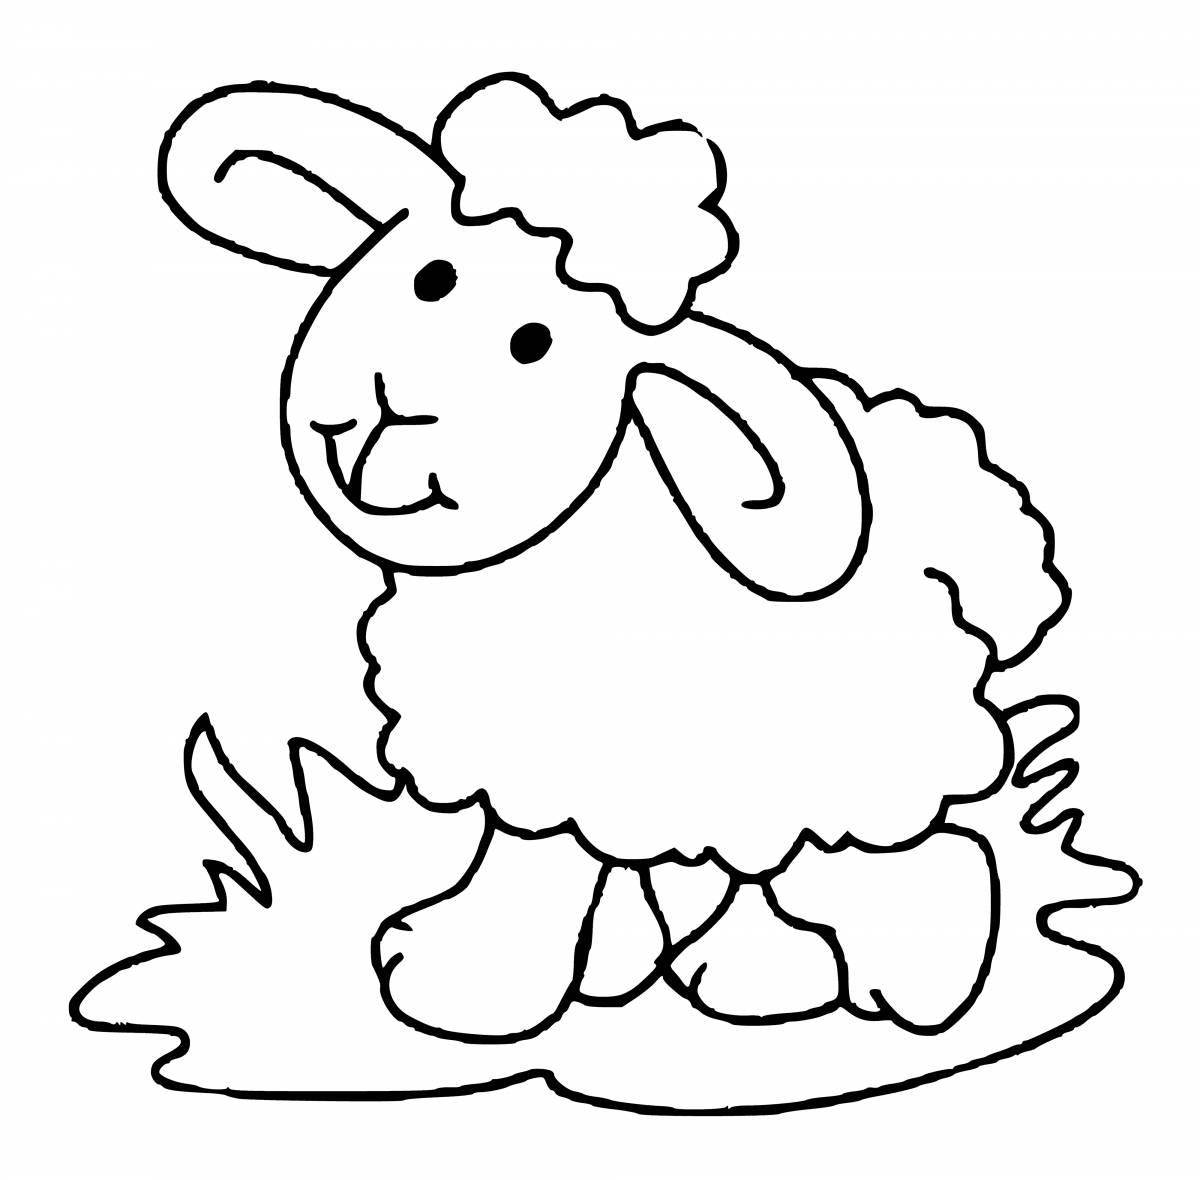 Ослепительная раскраска овечка для детей 3-4 лет